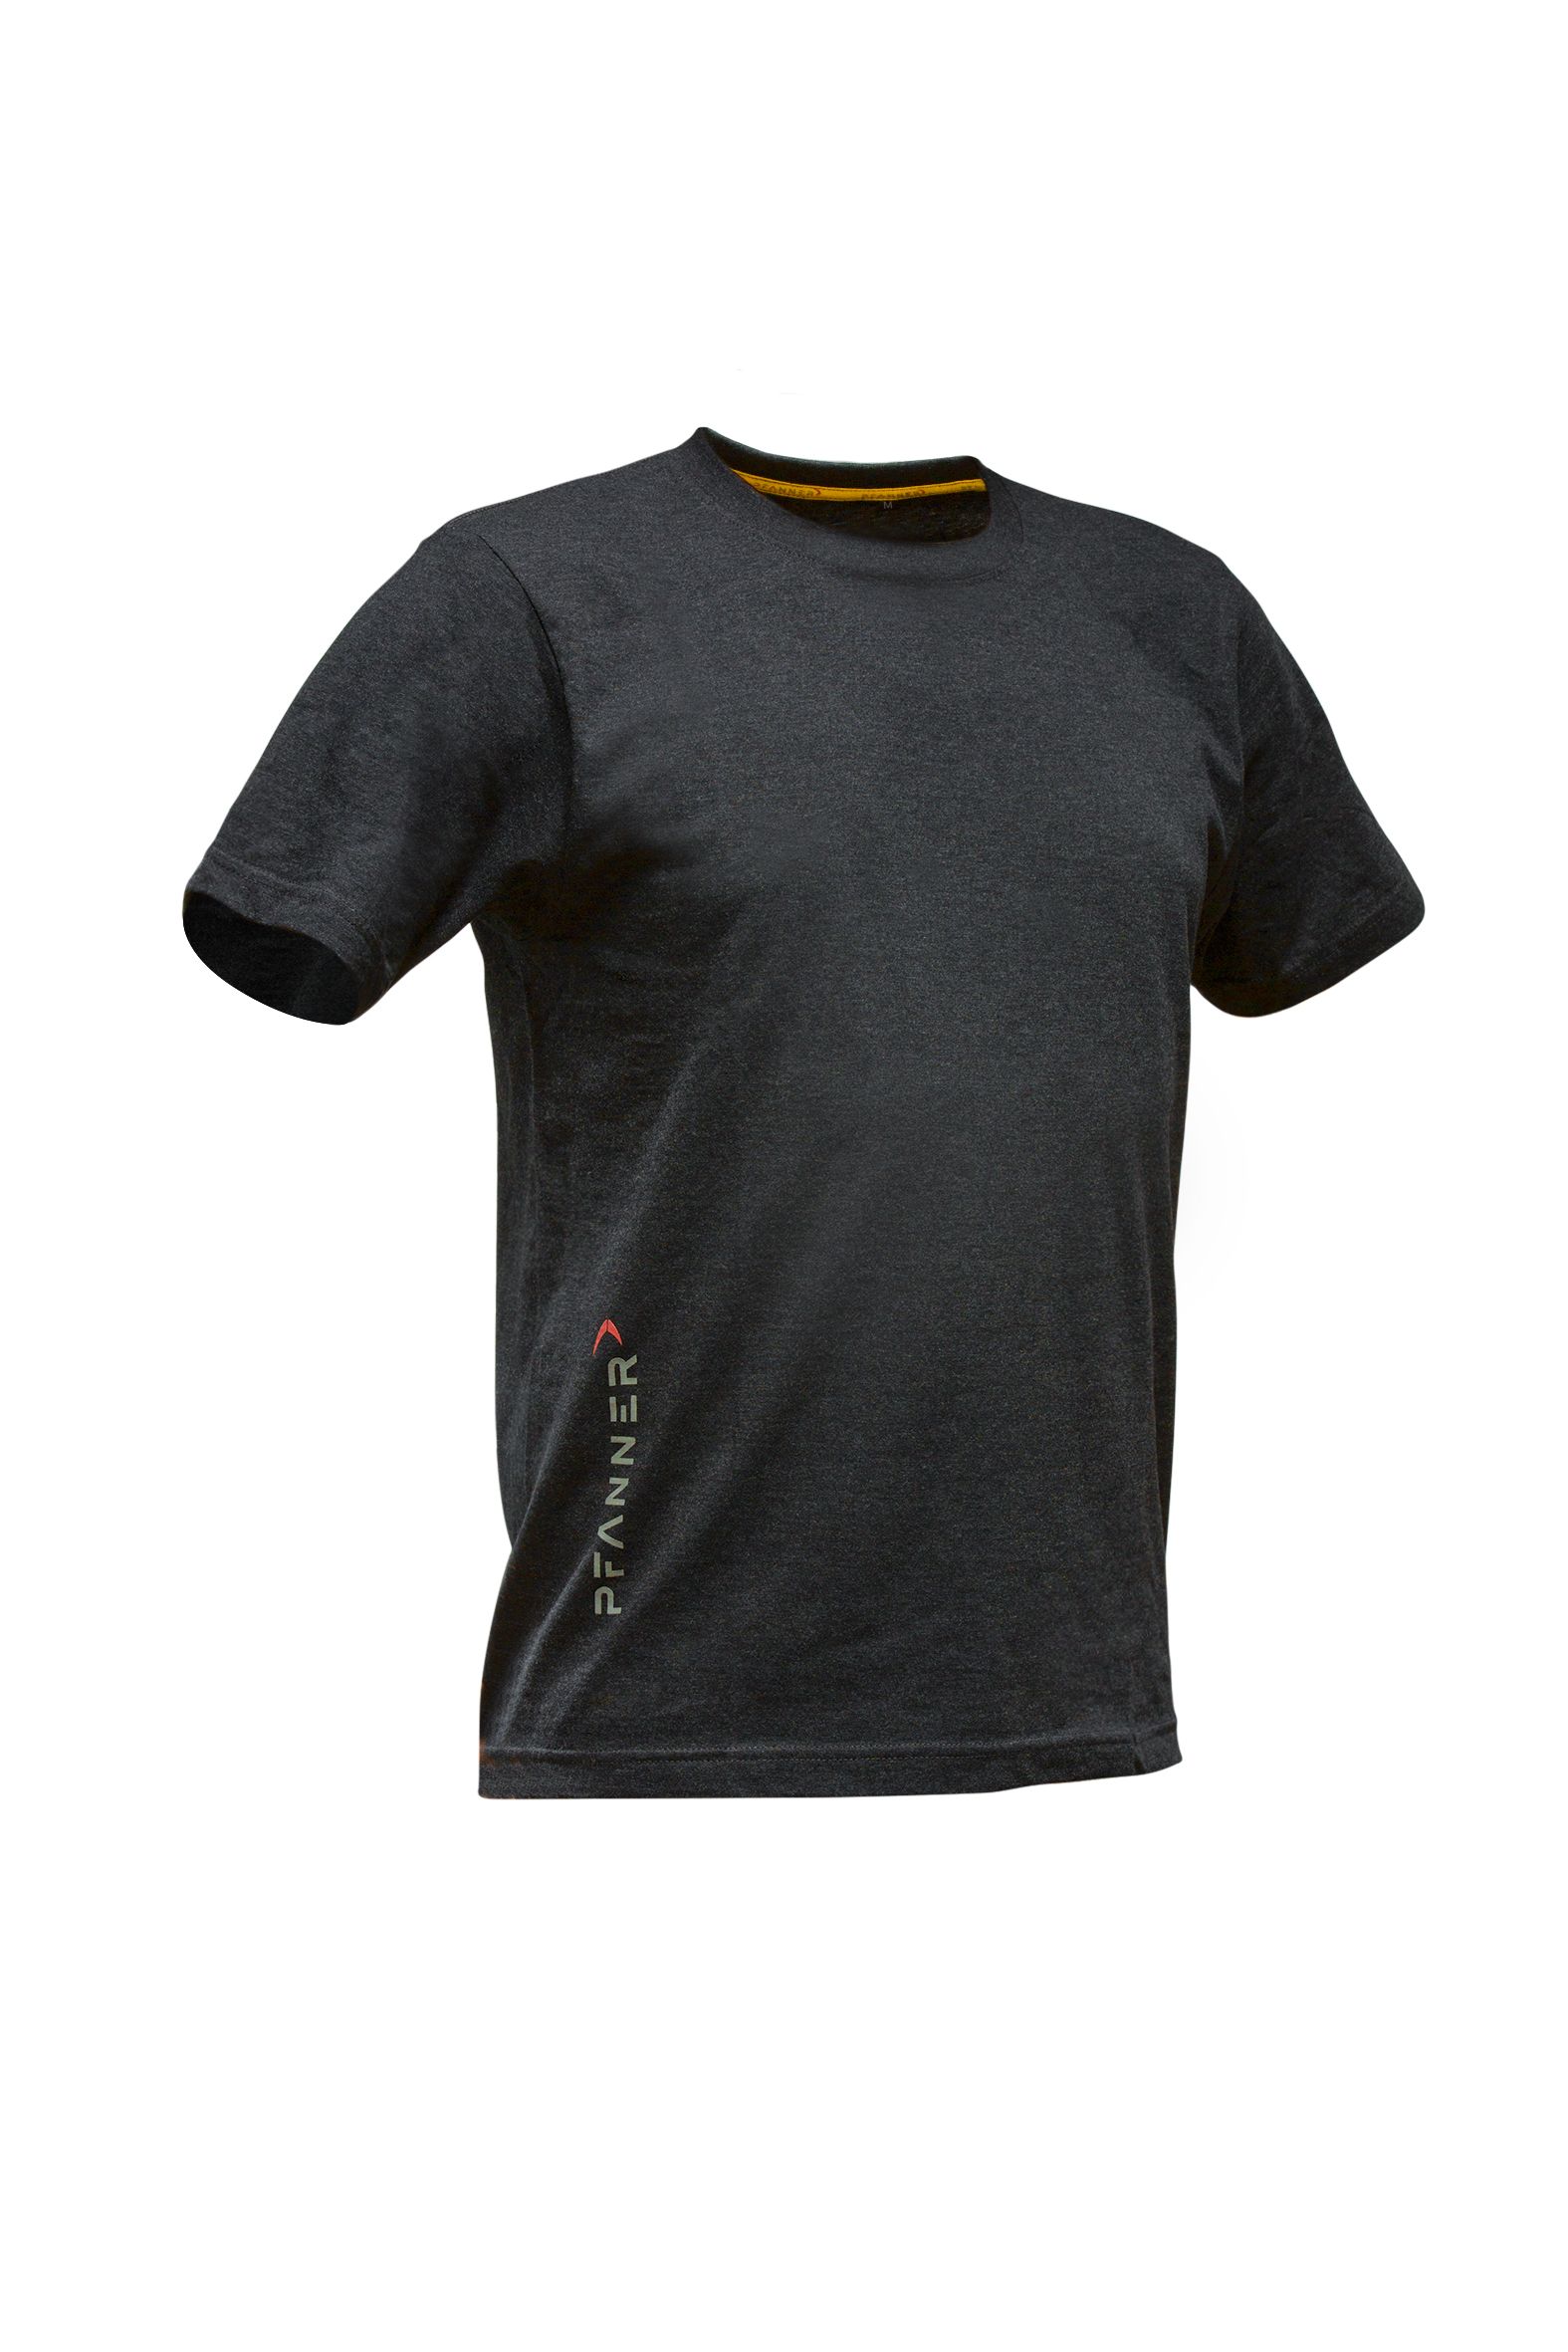 Pfanner T-Shirt Set, 2 Stück | KRENGEL Landtechnik